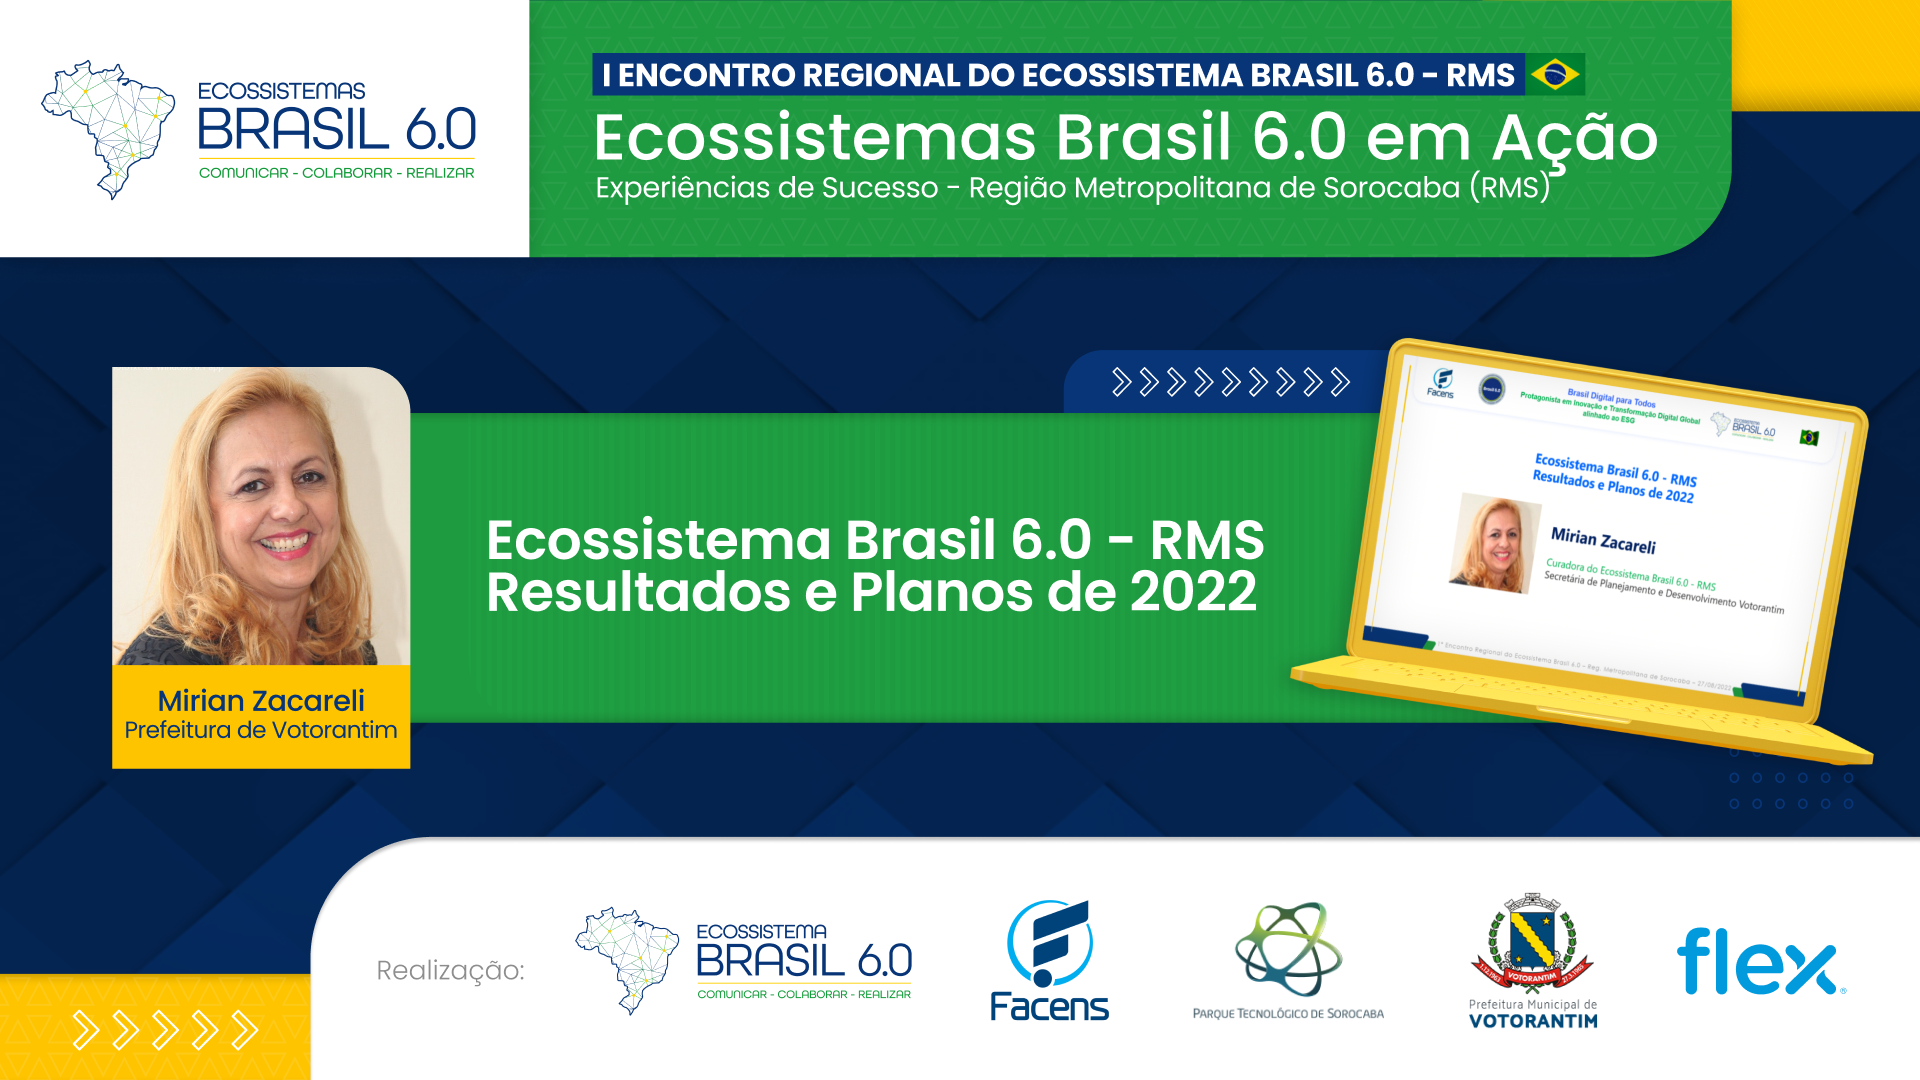 Ecossistema Brasil 6.0 - RMS Resultados e Planos de 2022